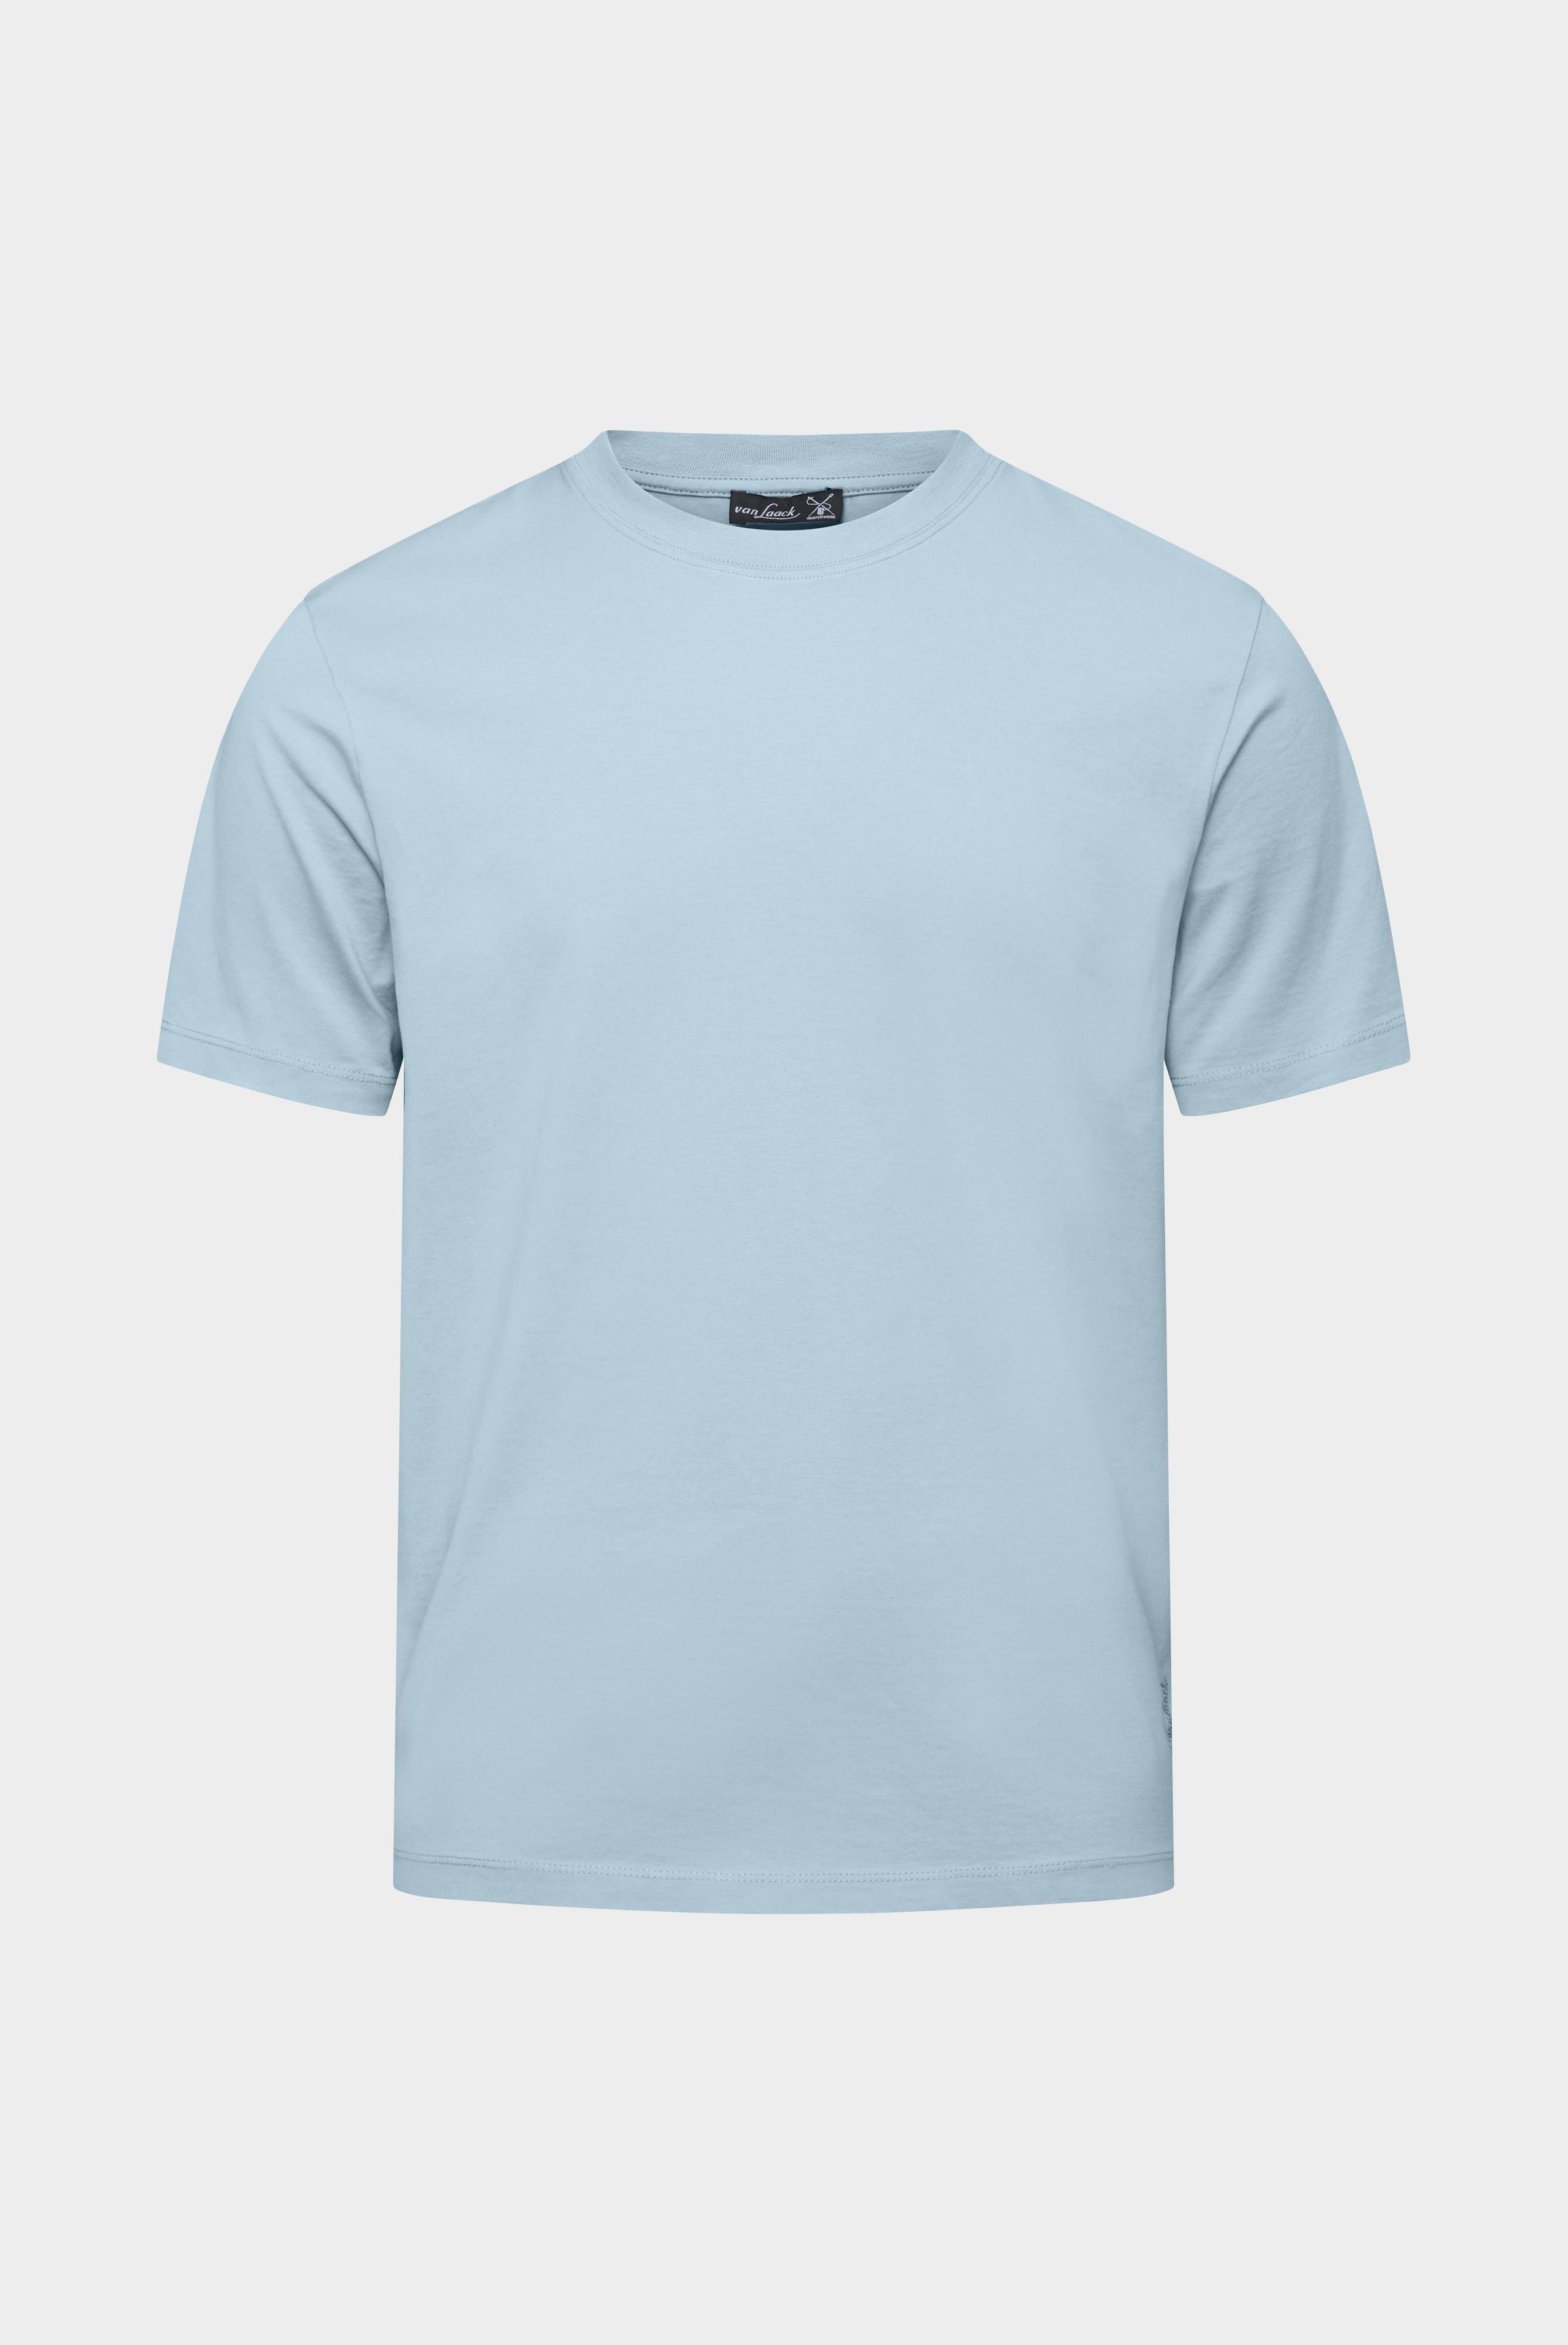 T-Shirts+T-Shirt aus langstapeliger Baumwolle+20.1660..Z20044.720.M